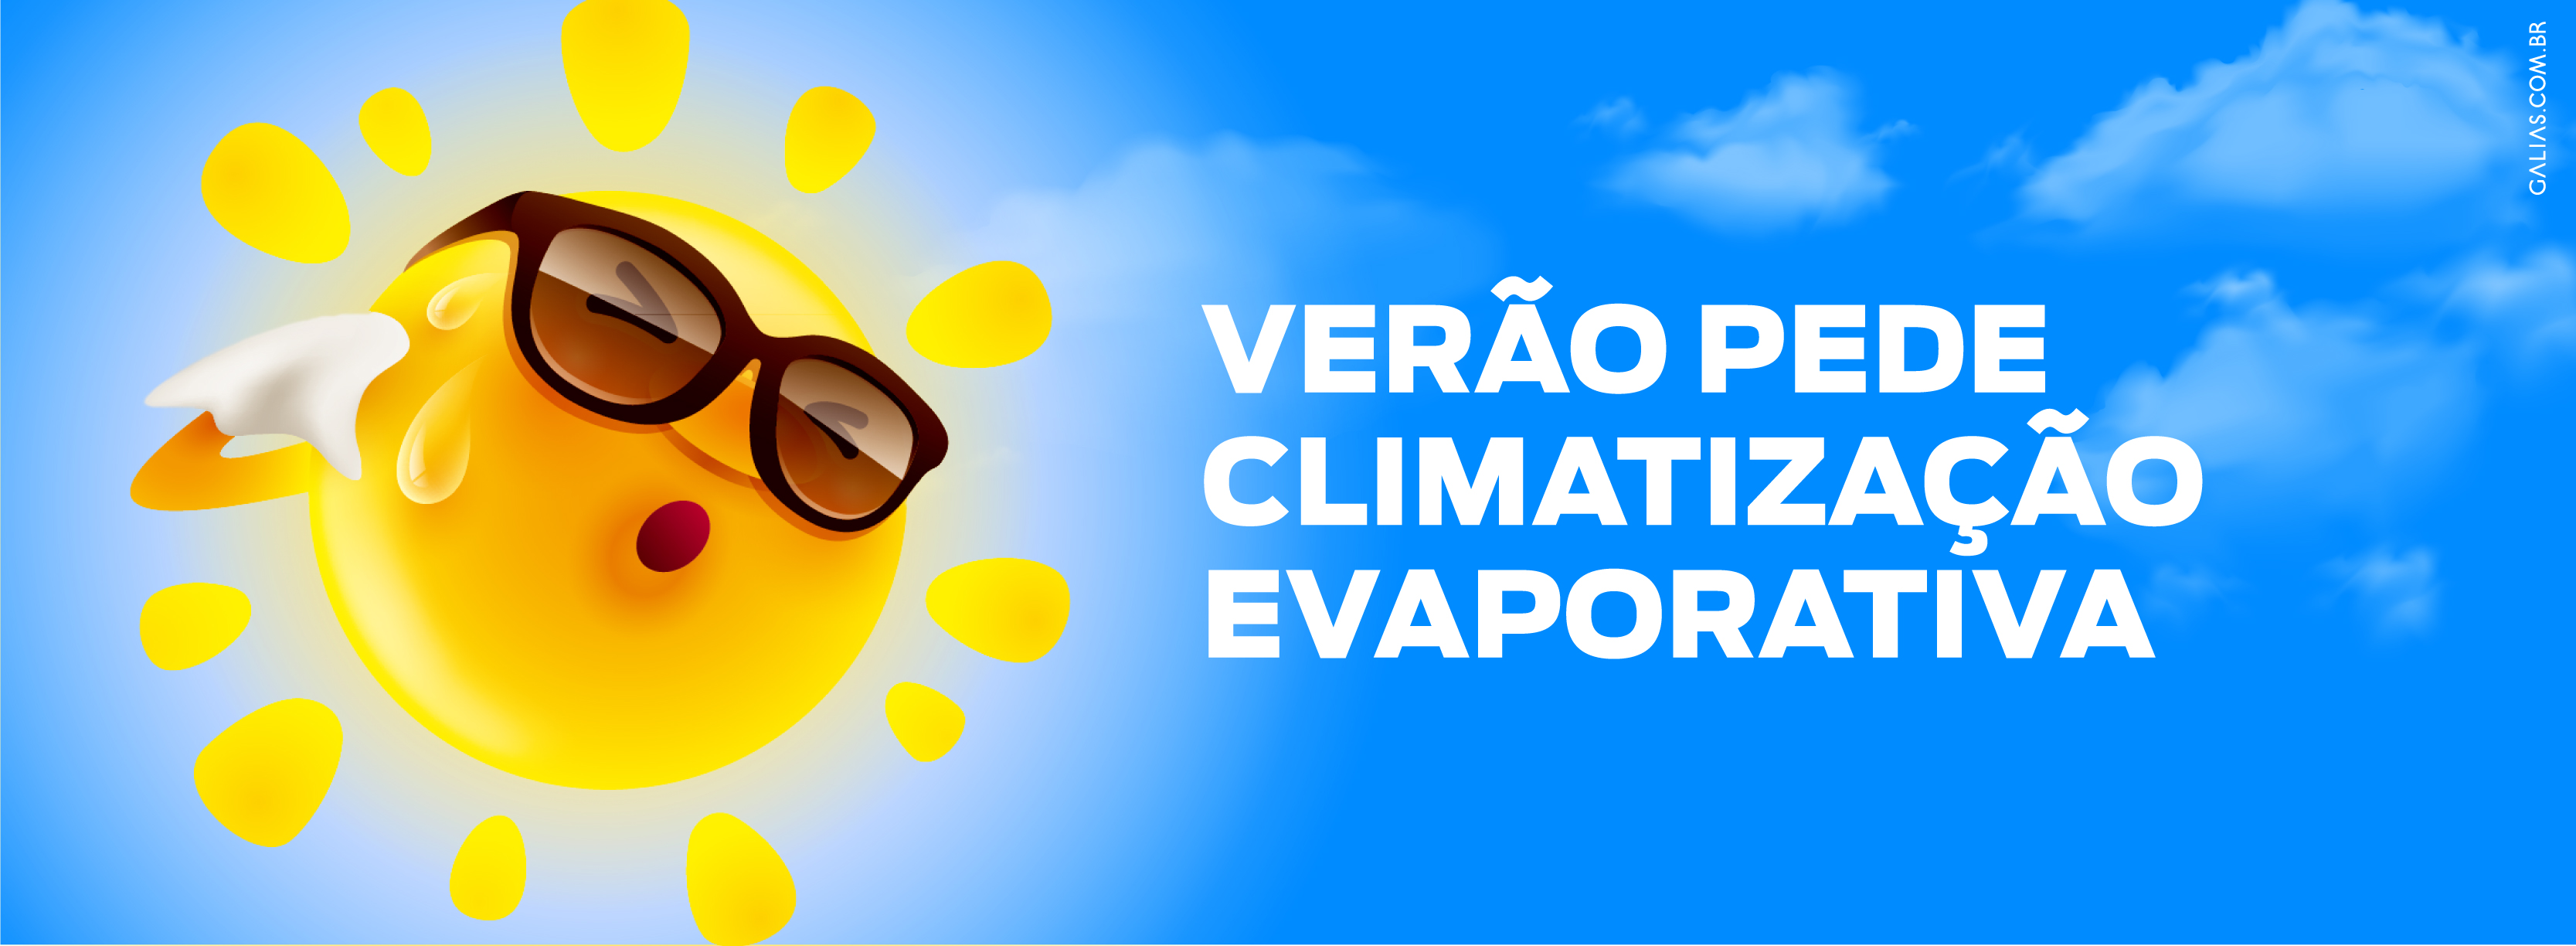 VERÃO PEDE CLIMATIZAÇÃO EVAPORATIVA